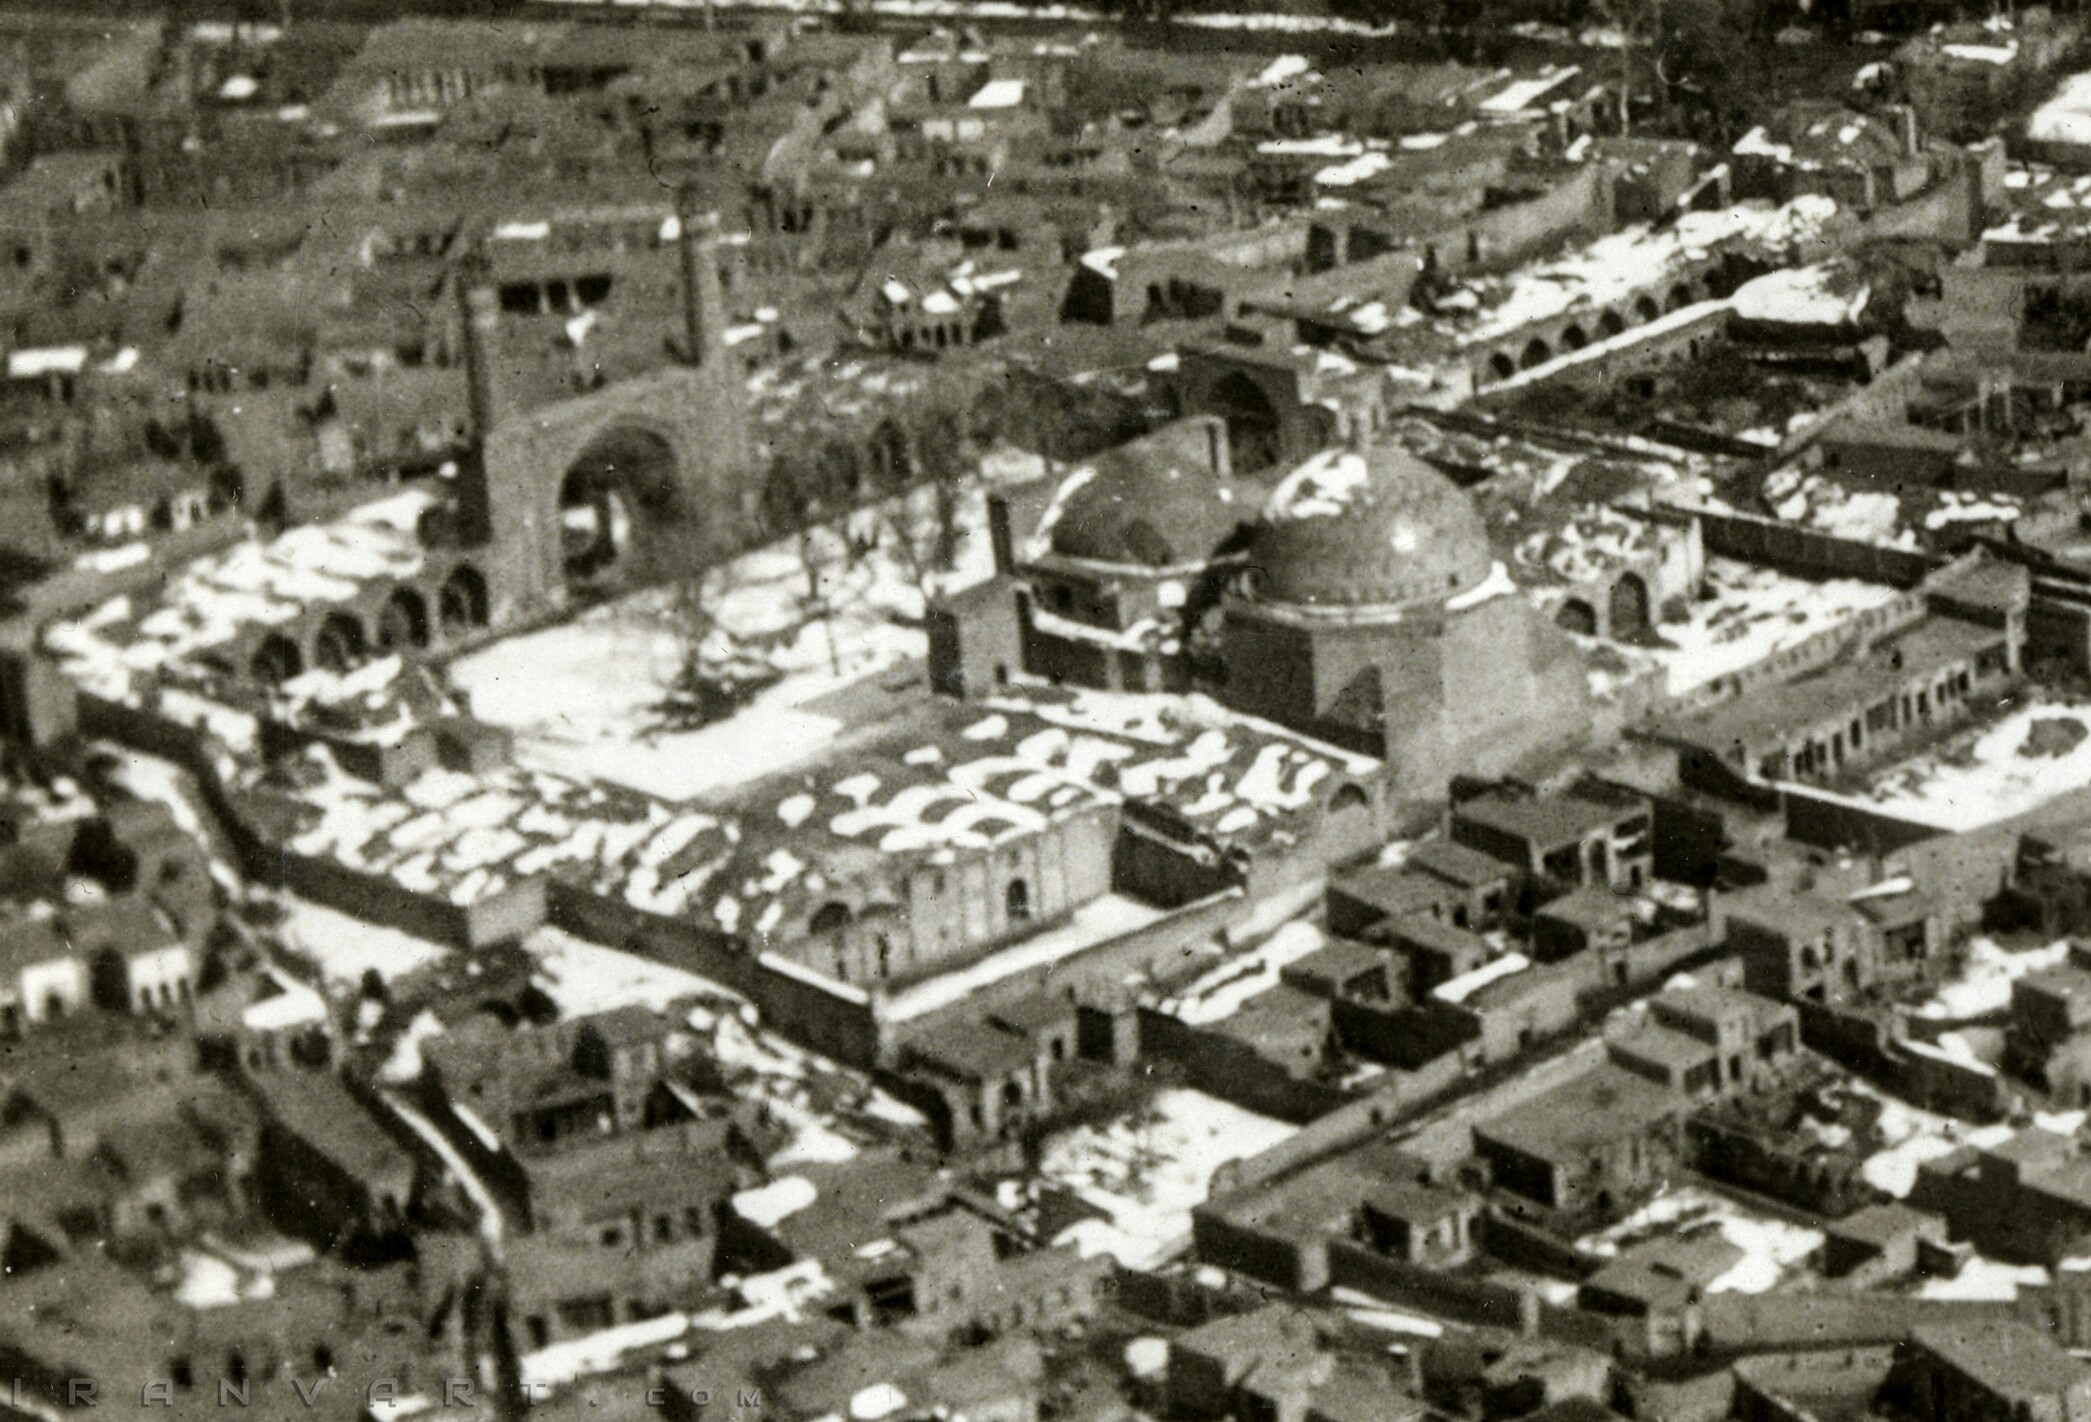 Cropped ETH-BIB-Moschee Von Qazvin Aus 300 M Höhe-Persienflug 1924-1925-LBS MH02-02-0113-AL-FL